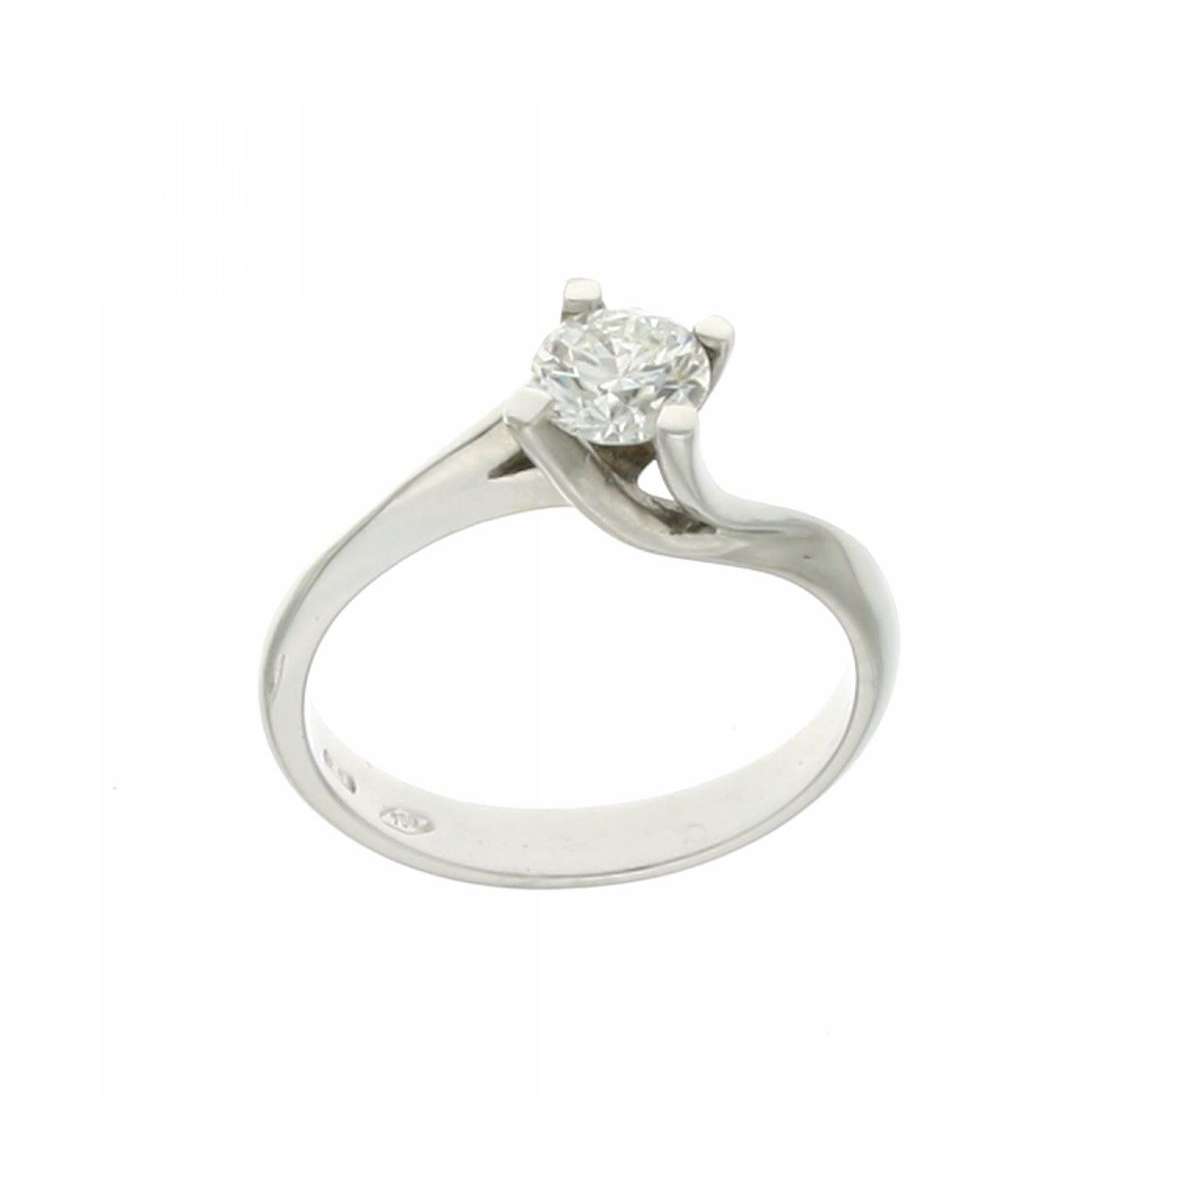 Anello solitario Valentino diamante certificato HRD Antwerp carati 0,60 Colore G Purezza VS2